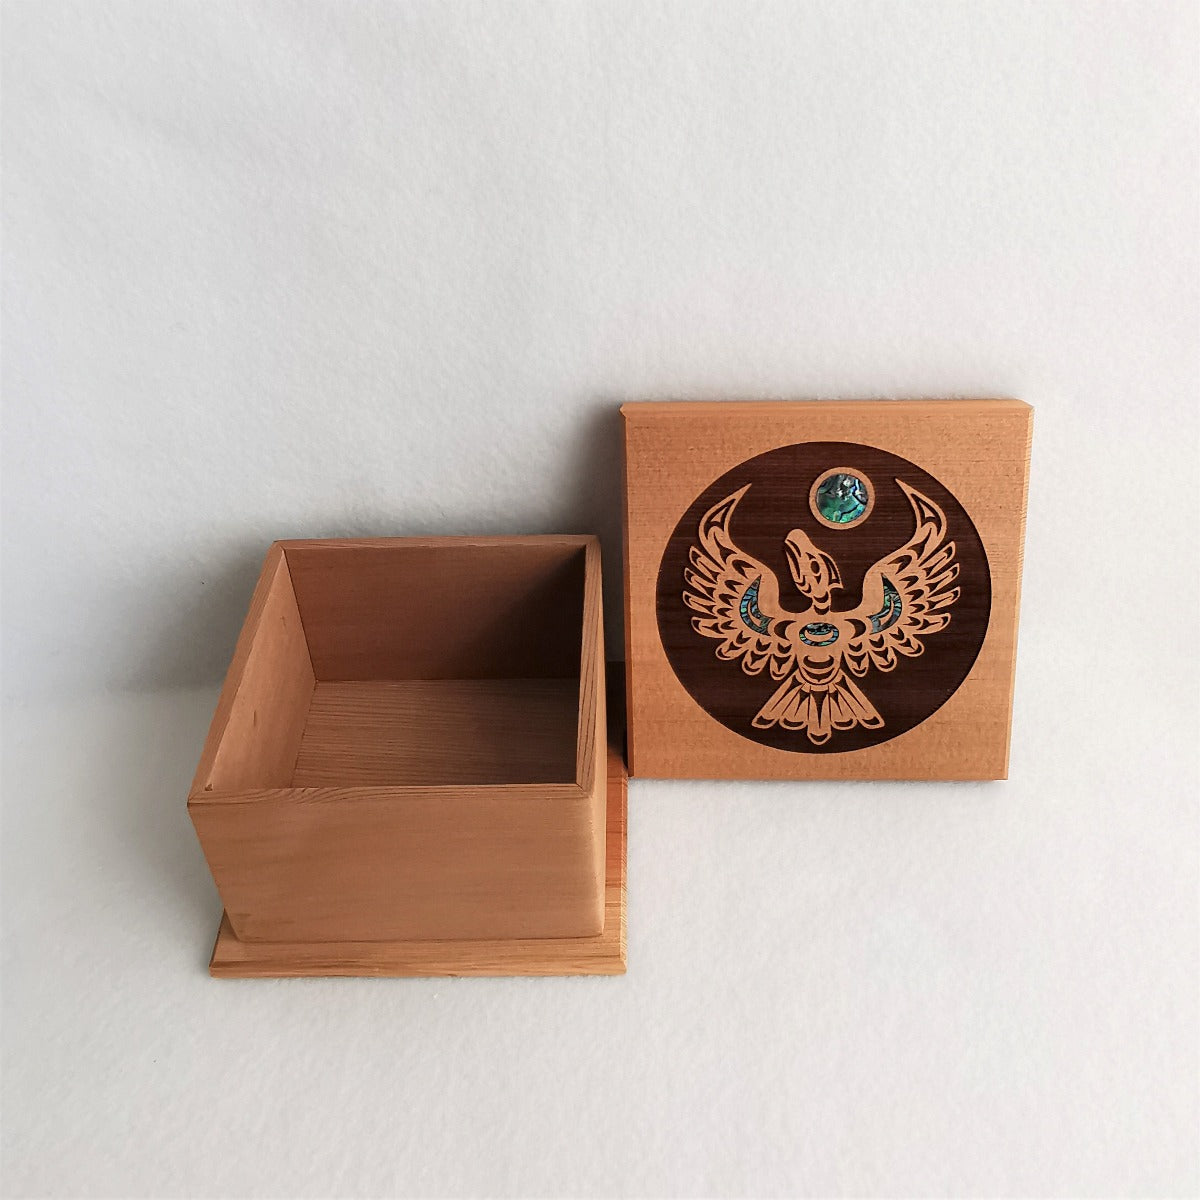 Native Design Bentwood Box - Thunderbird